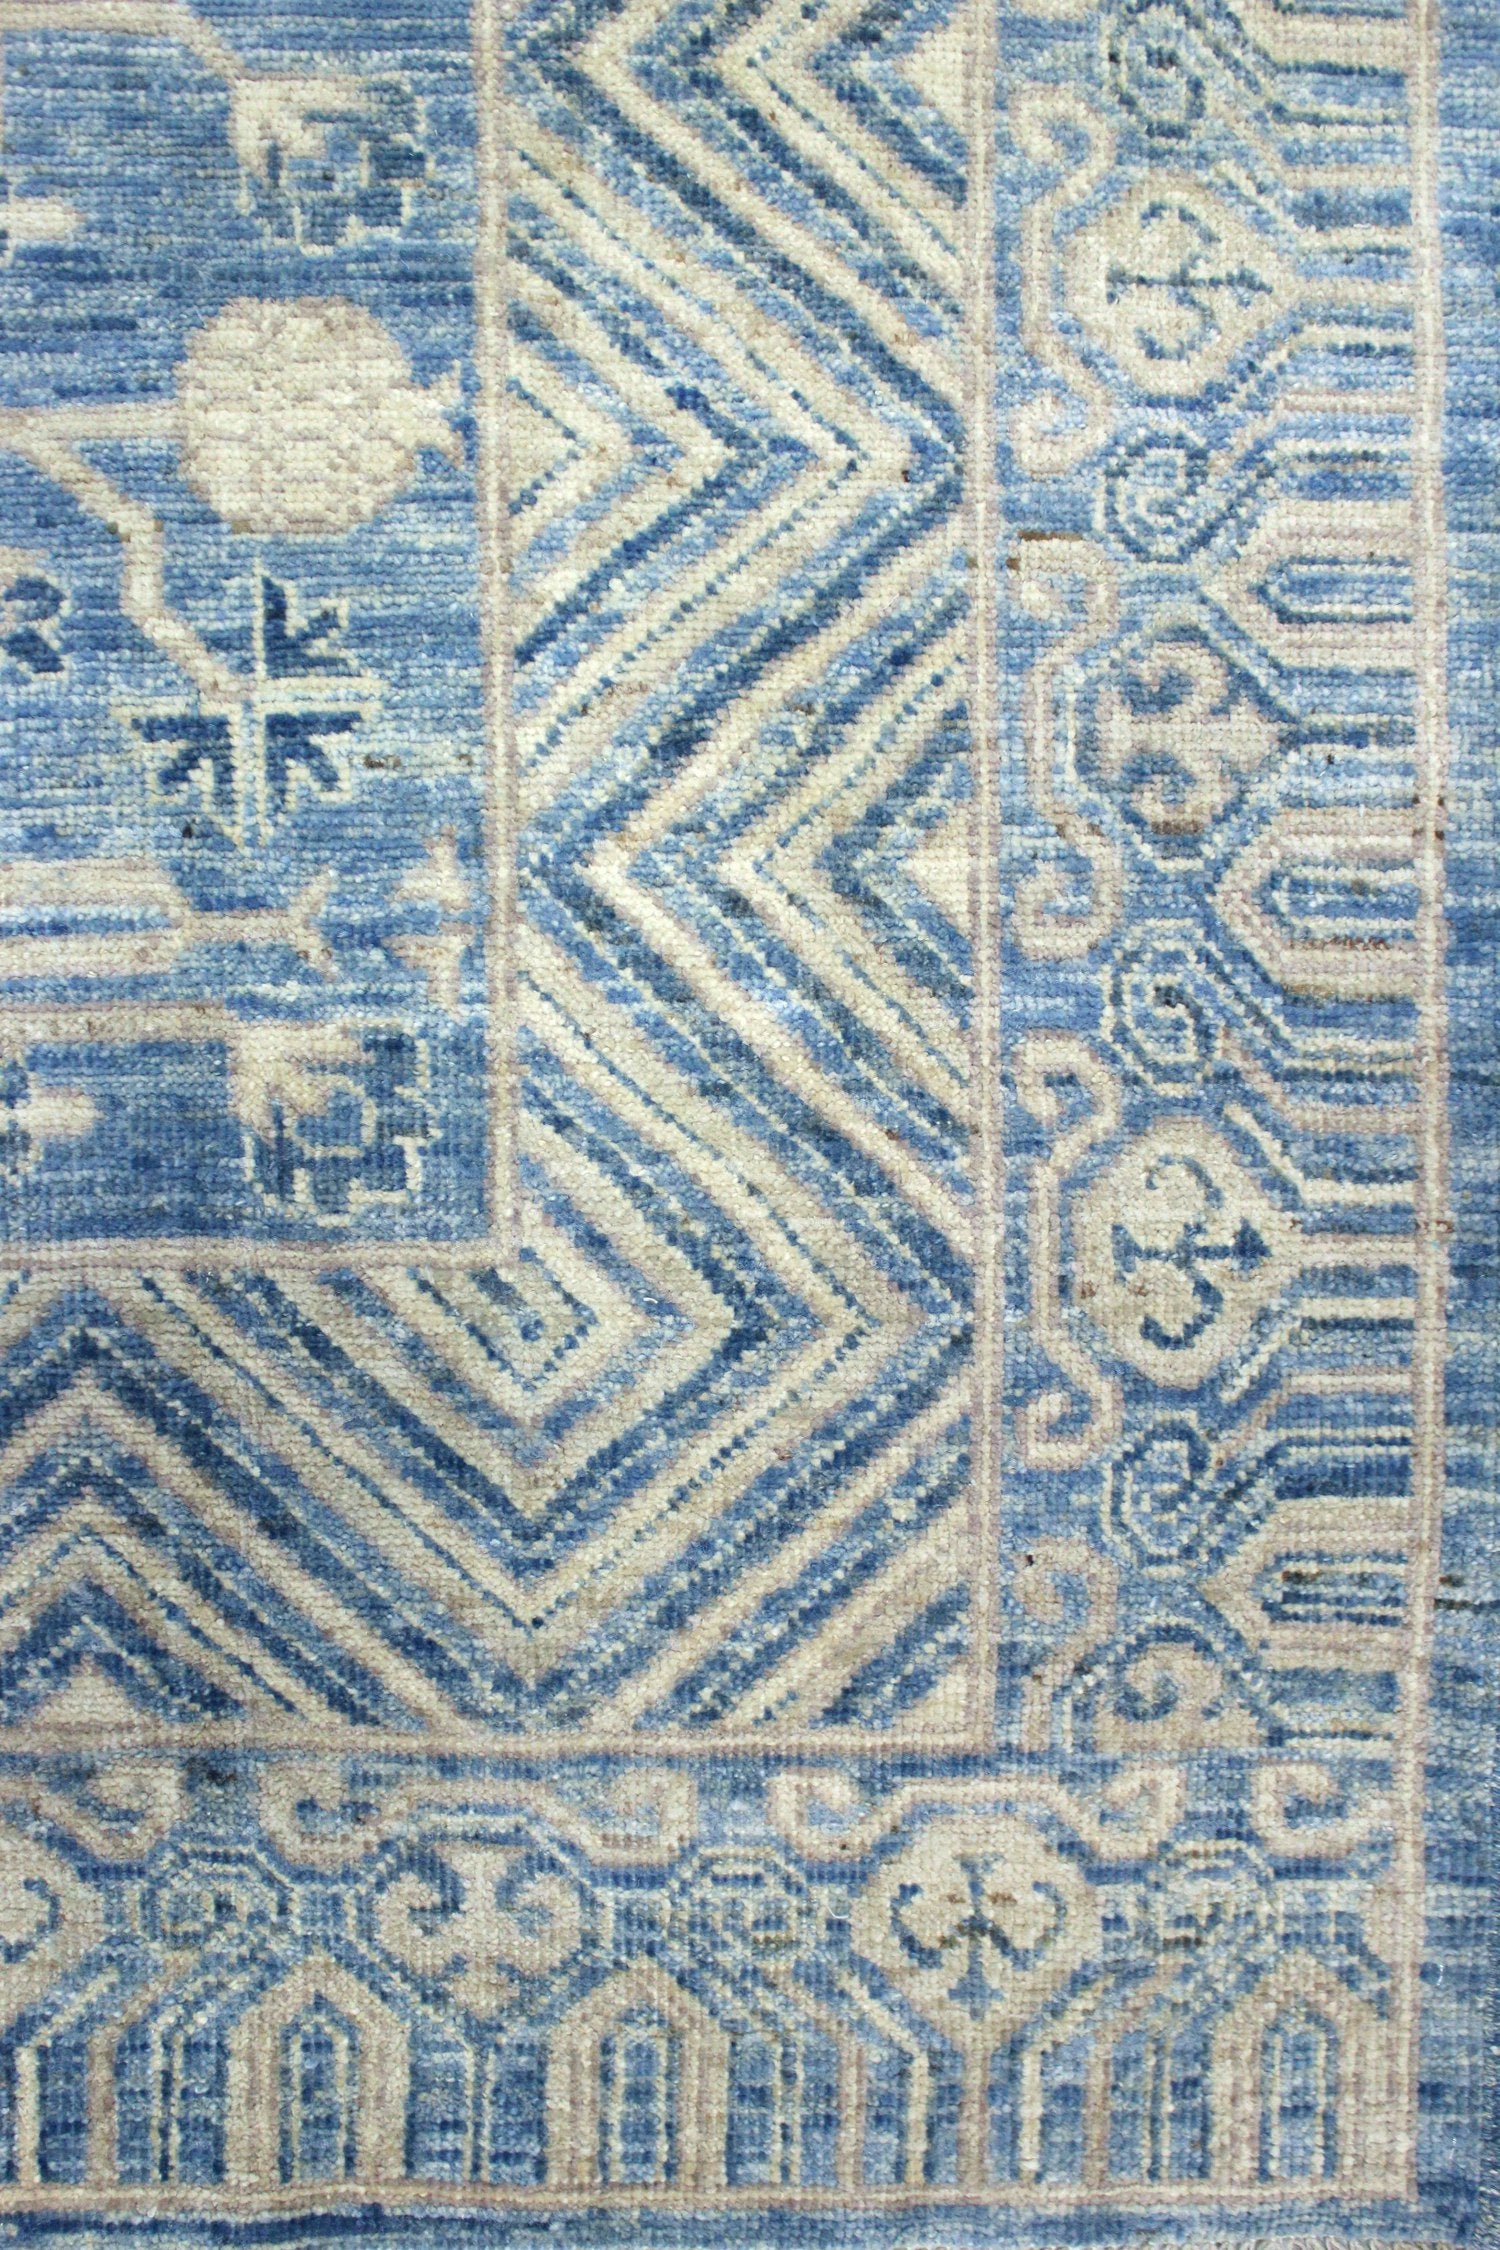 Khotan Handwoven Traditional Rug, J69779